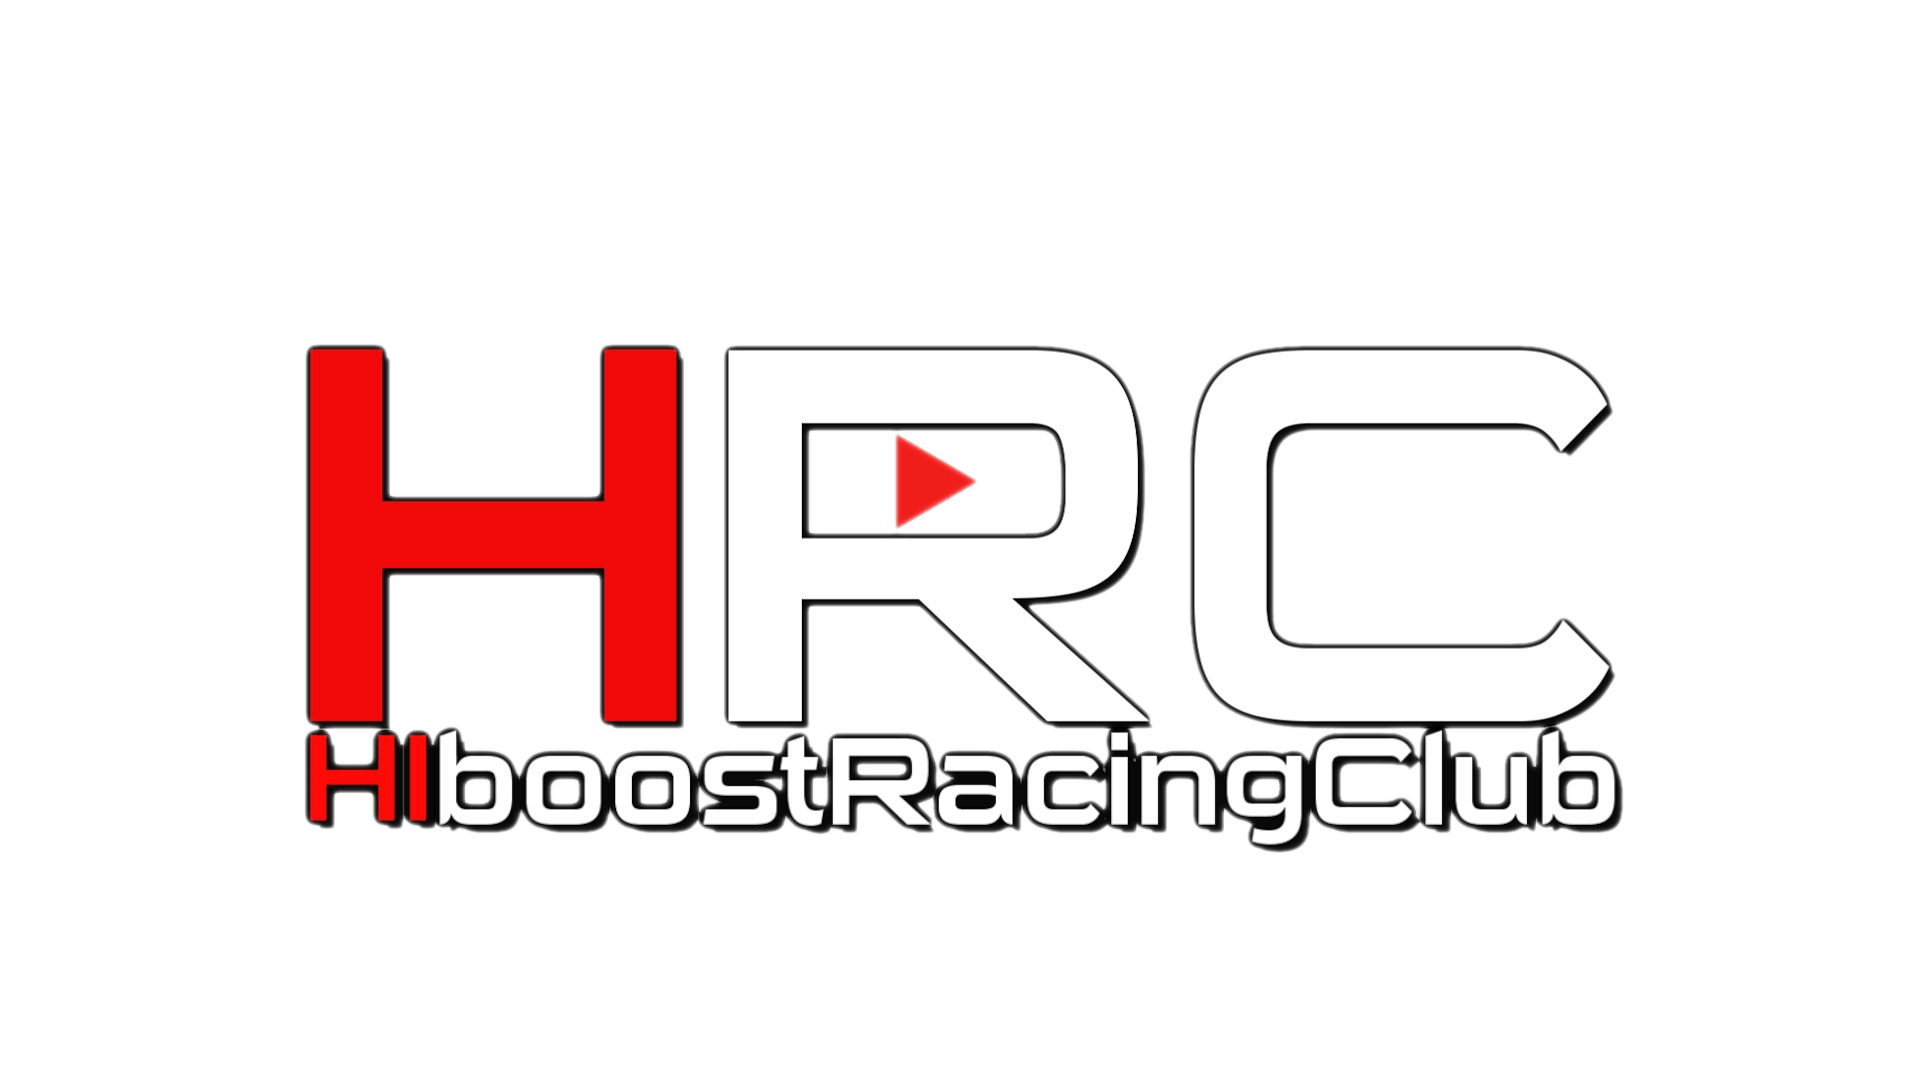 Teespring Logo - HIboost Racing Club Merch | Teespring